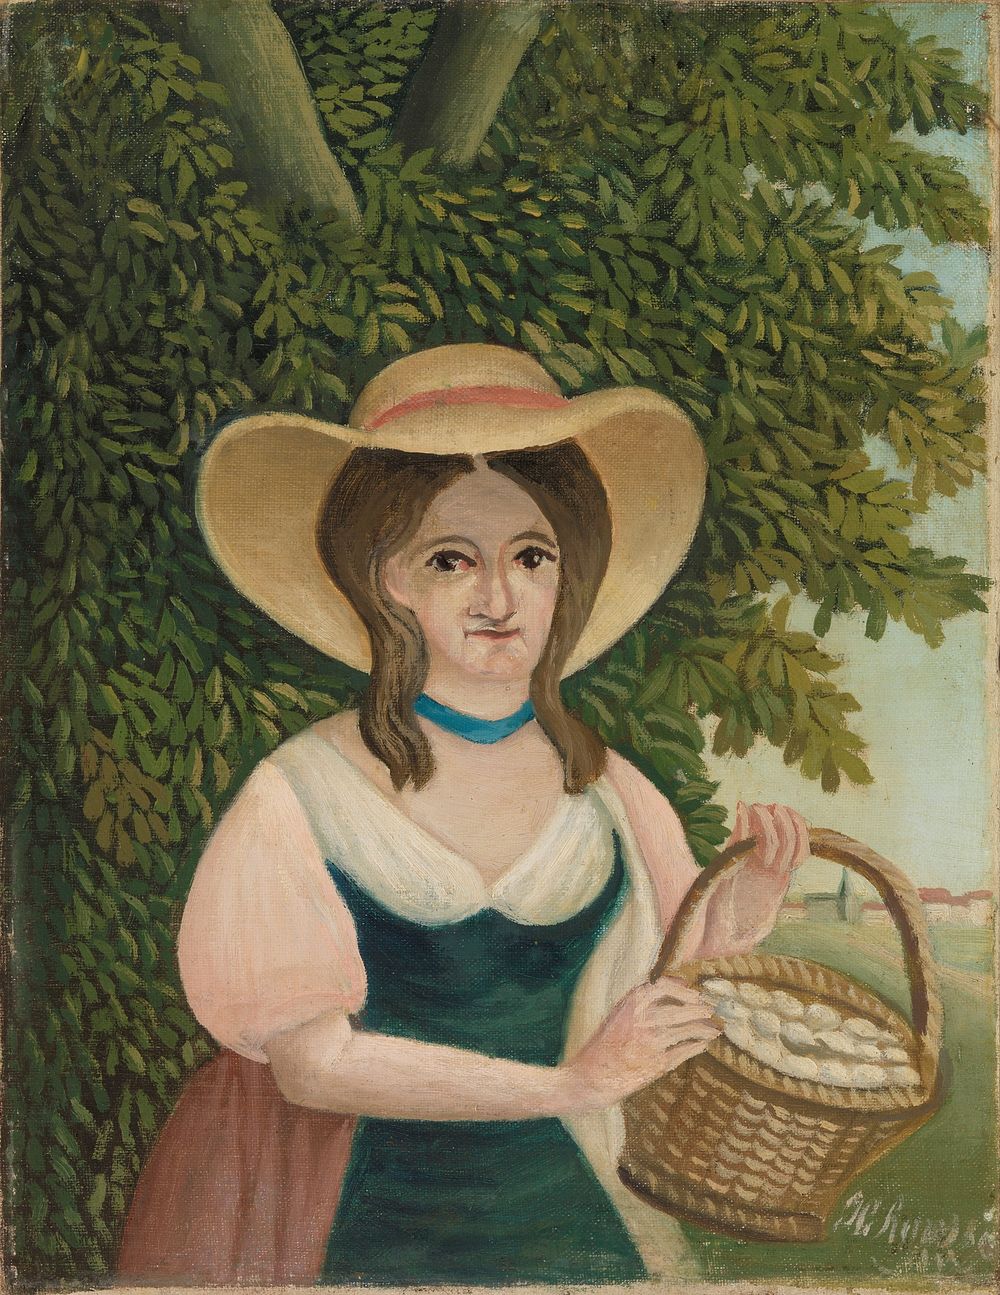 Woman with Basket of Eggs (La Femme au panier d'Å"ufs) by Henri Rousseau